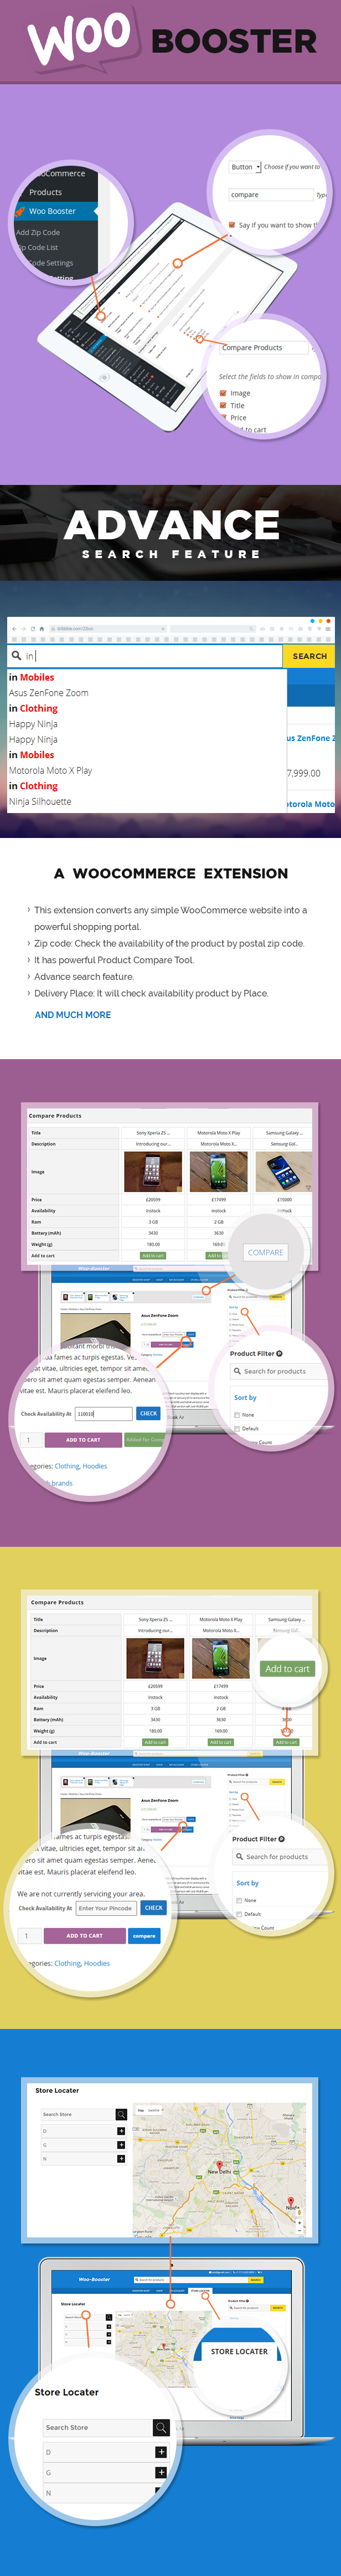 WooBooster - WooCommerce Compare, Live-Suche, Produktfilter, Händlersuche